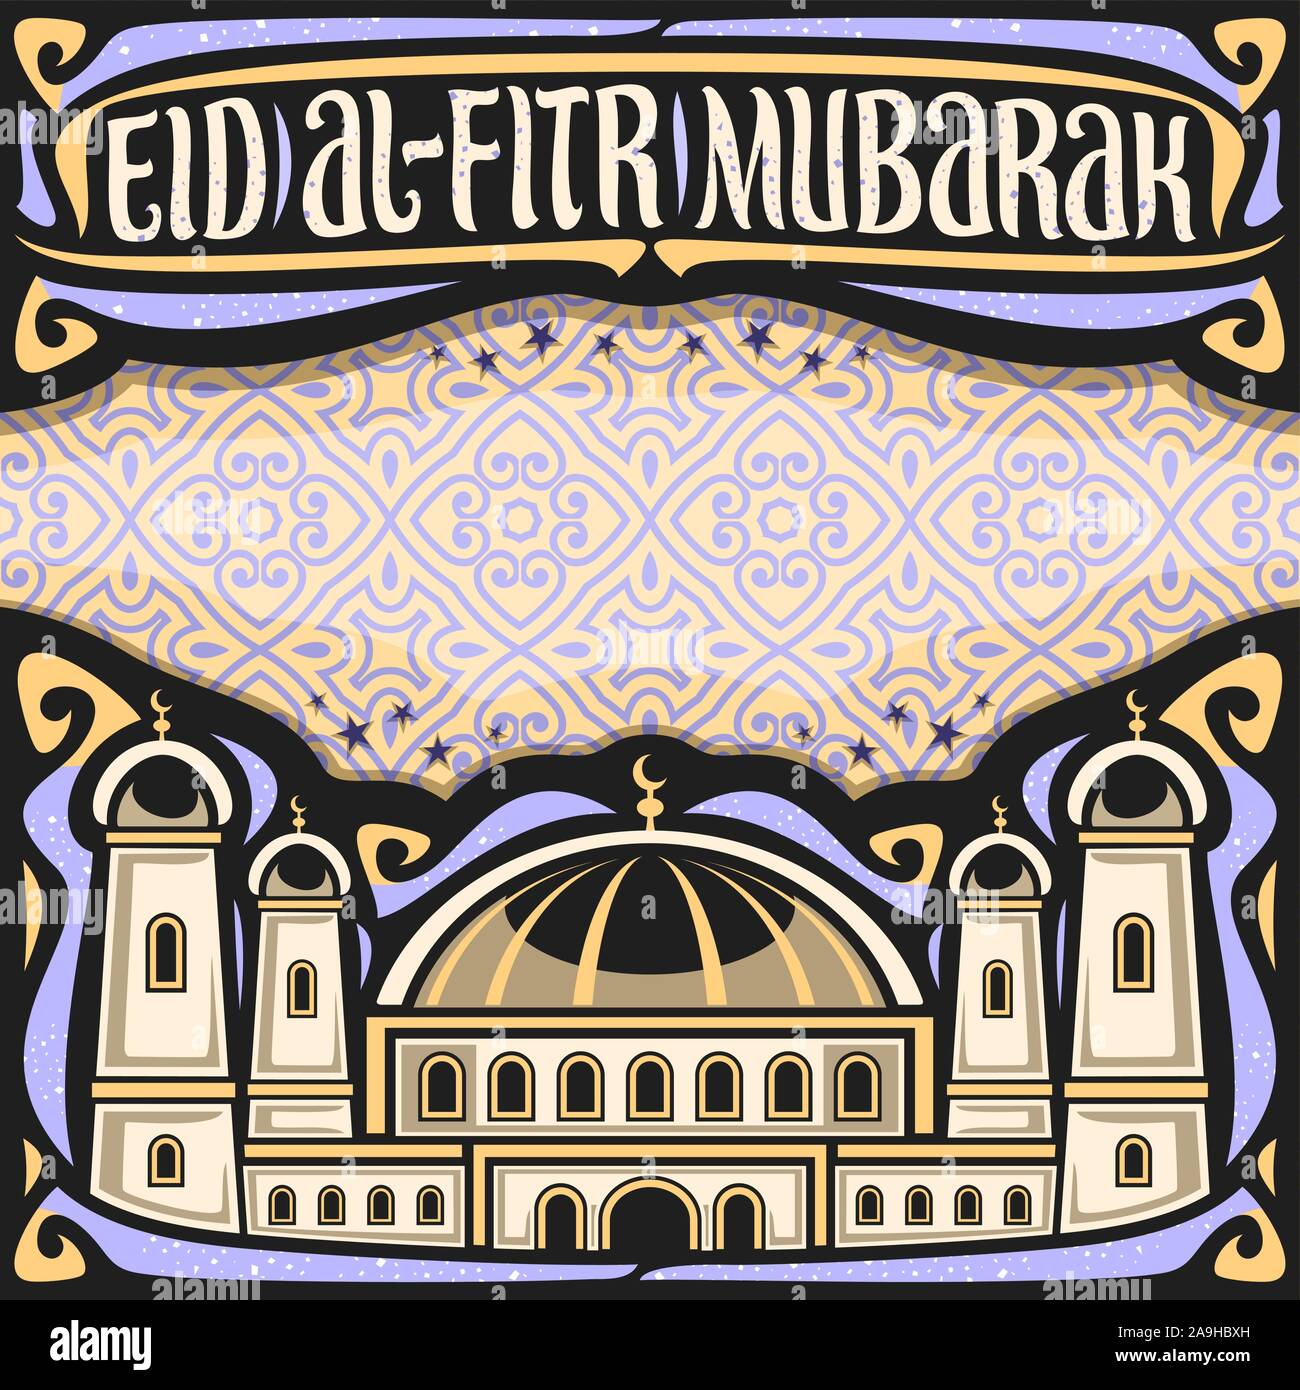 Vektor Plakat für Urlaub, ebenso wie das Eid al-Adha mit Kopie Raum, Schlagzeile mit gedeiht, kalligraphische Schrift für Worte Eid al Fitr Mubarak, Abbildung: mosq Stock Vektor